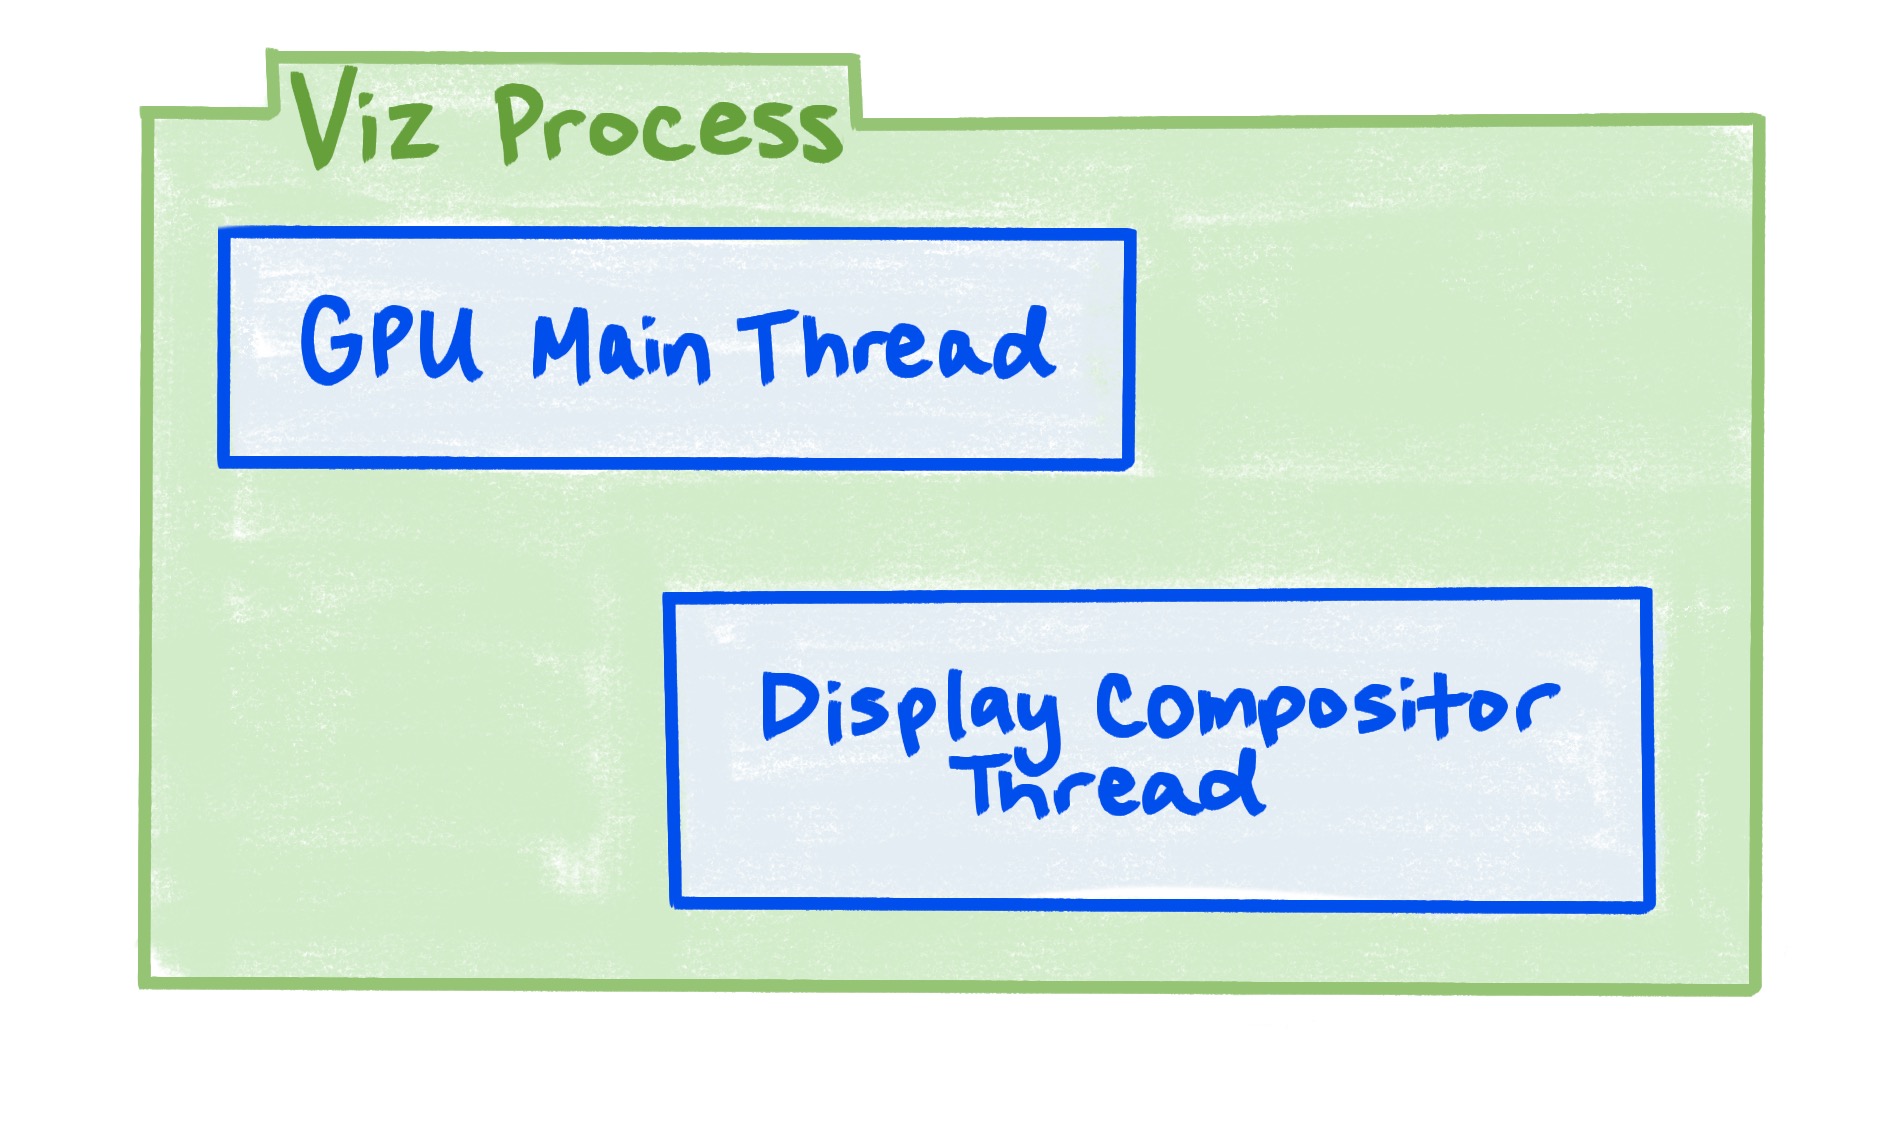 תרשים שמראה שתהליך Viz כולל את ה-thread הראשי של GPU ואת ה-thread של מחבר התצוגה.